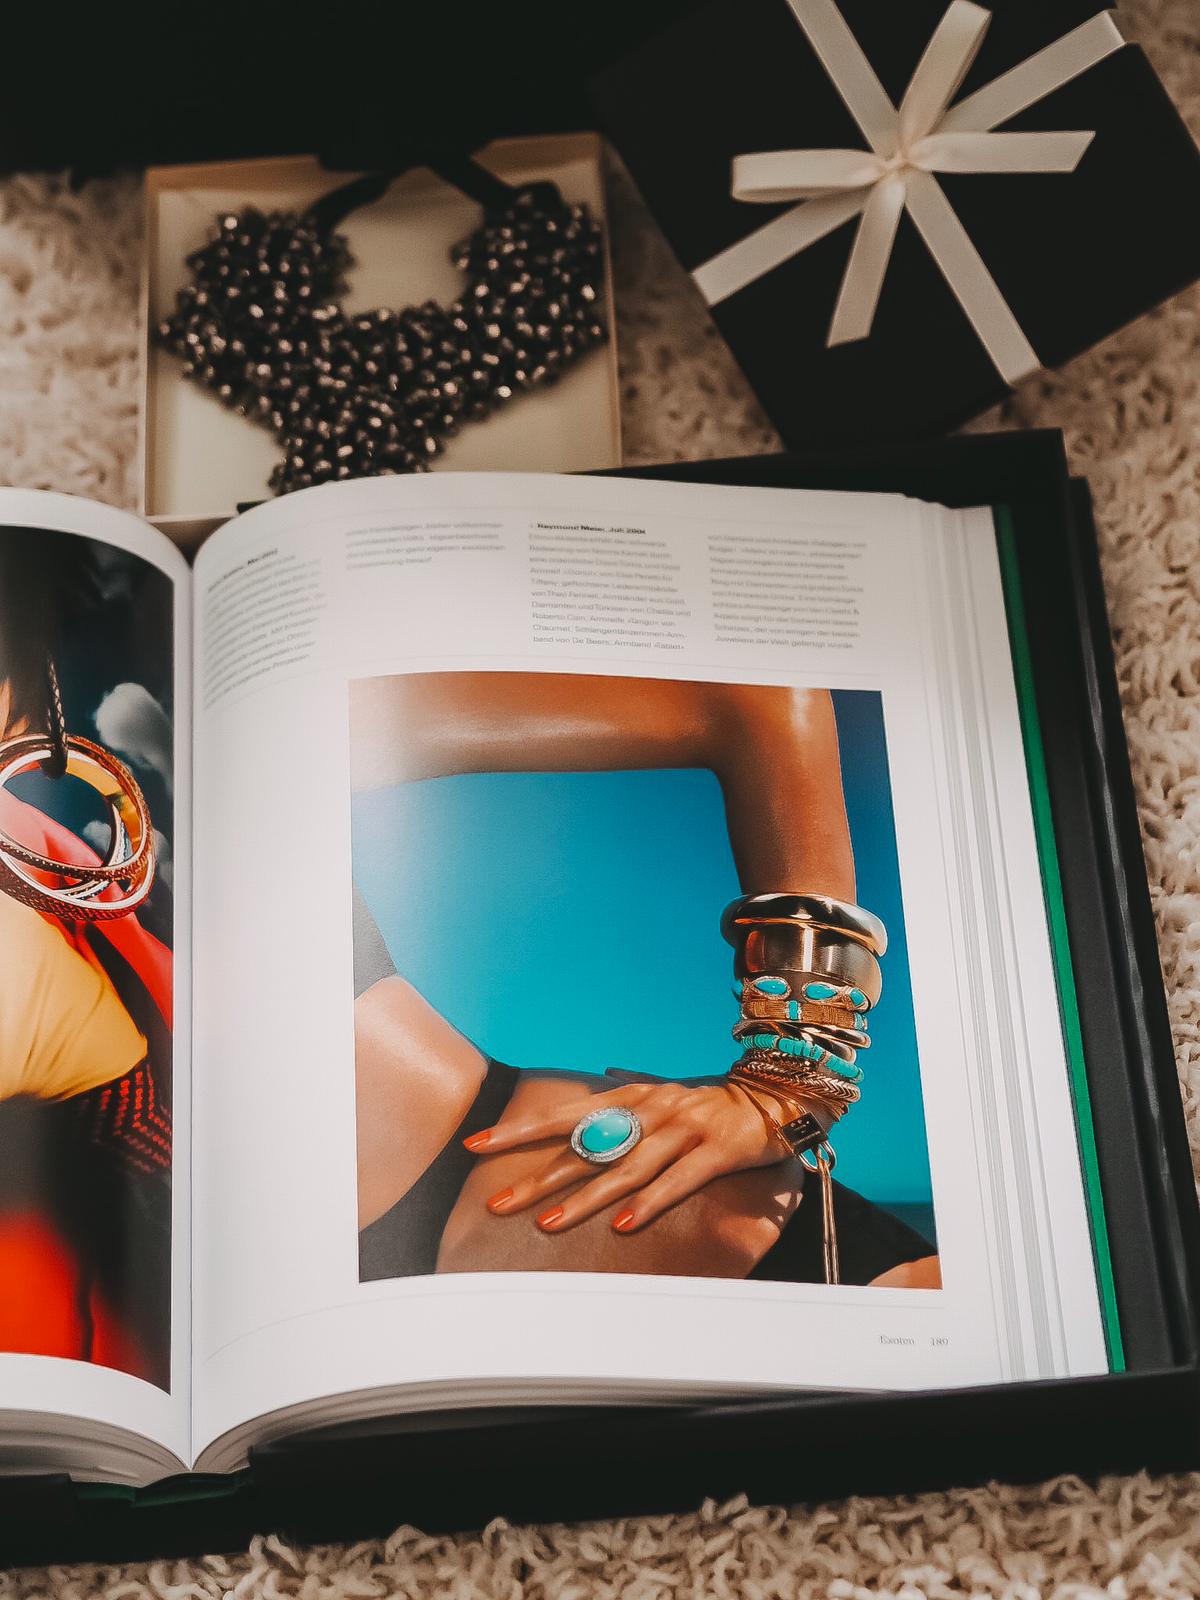 Heute zeige ich auf dem Blog Bücher für Fashion Blogger "Outfit of the Day-Fashion-Styles für jede Stimmung“ und der prächtige Bildband "Vogue - Schmuck".